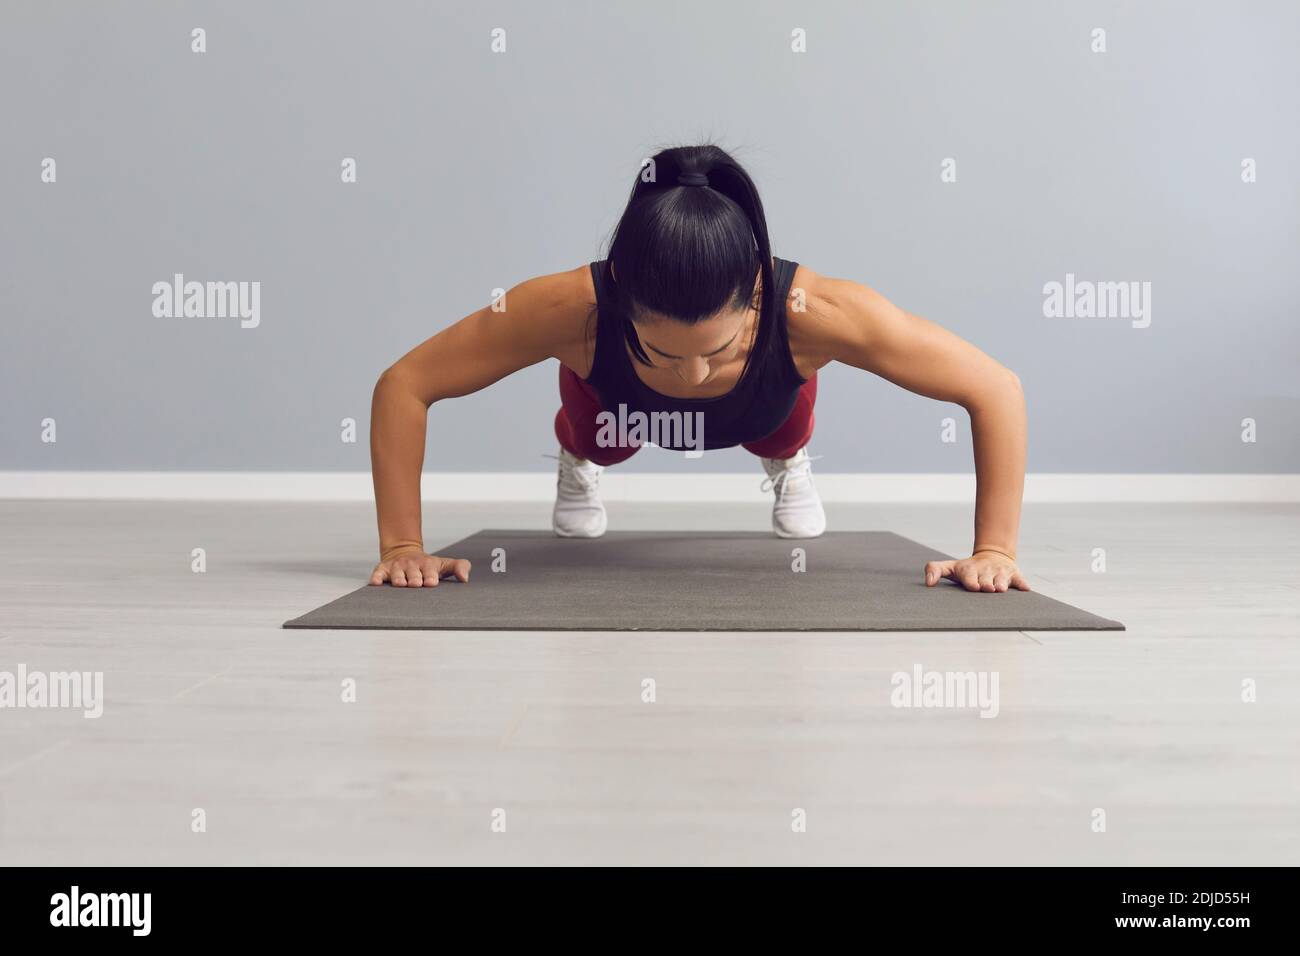 La donna atletica fa i push-up per riscaldare i muscoli pettorali, i triceps e le spalle. Foto Stock